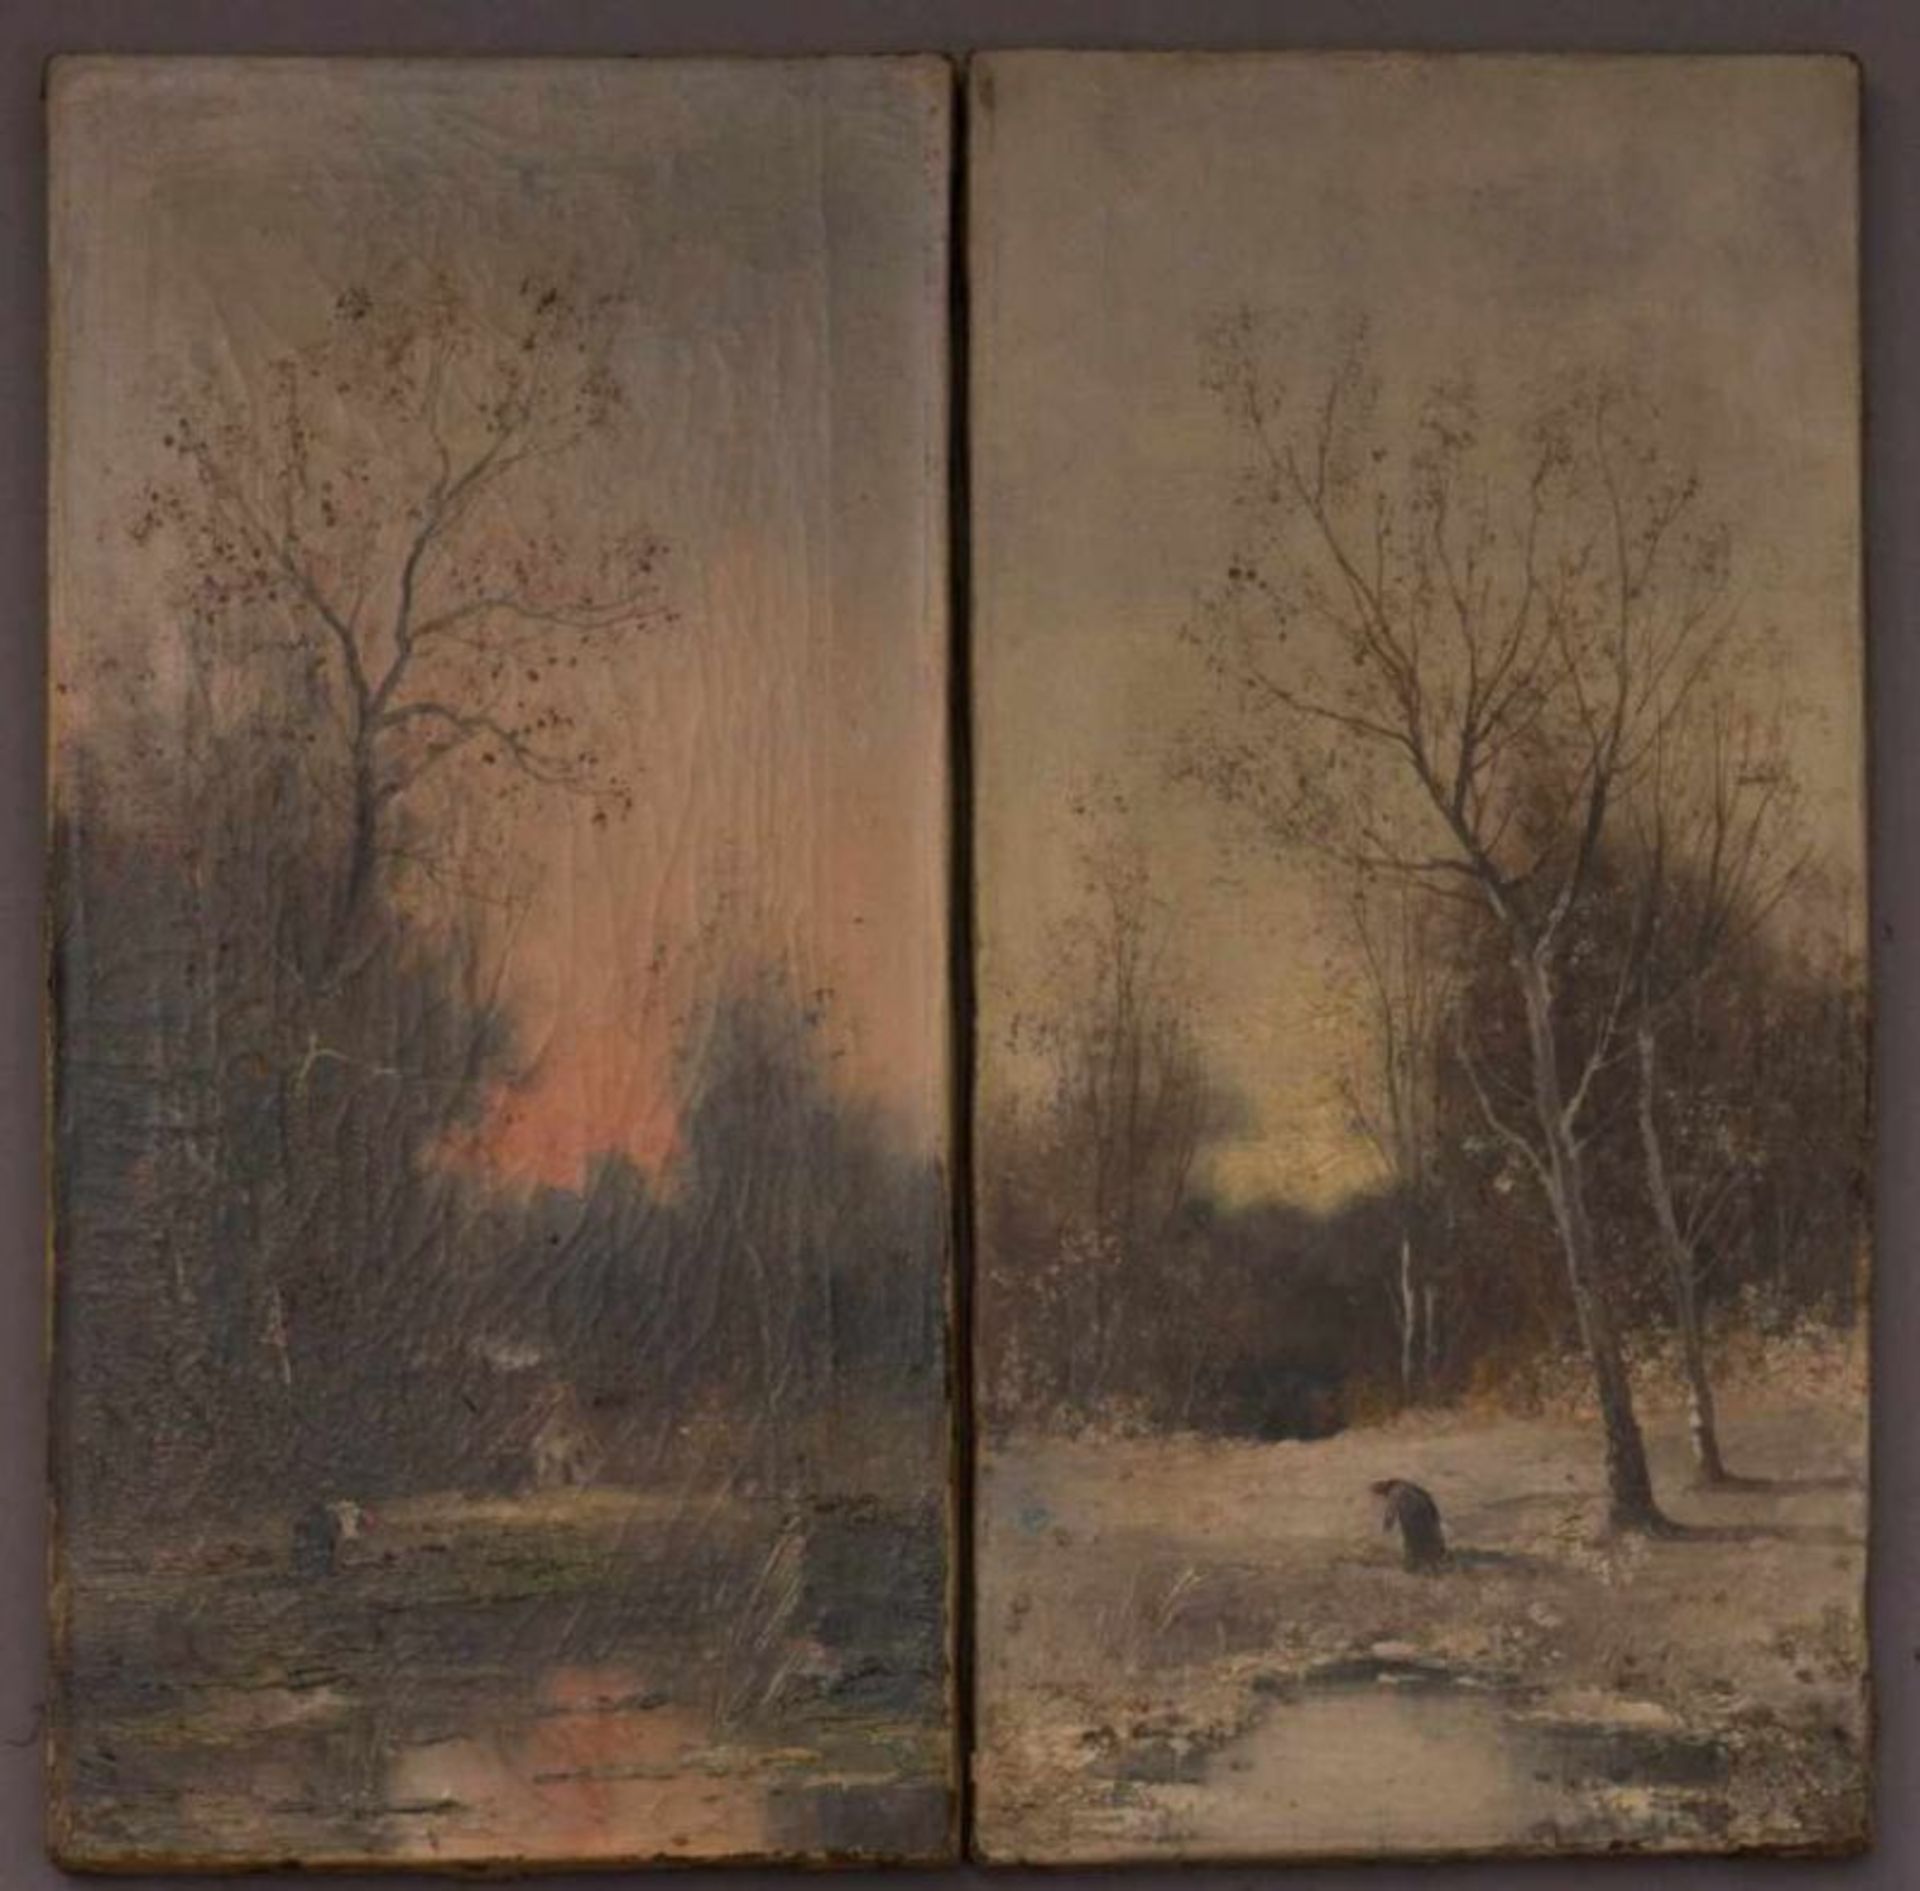 Paar schmaler, hochformatiger Landschaftsgemälde, Öl auf Leinwand, um 1900, ungerahmt. Je ca. 53,5 x